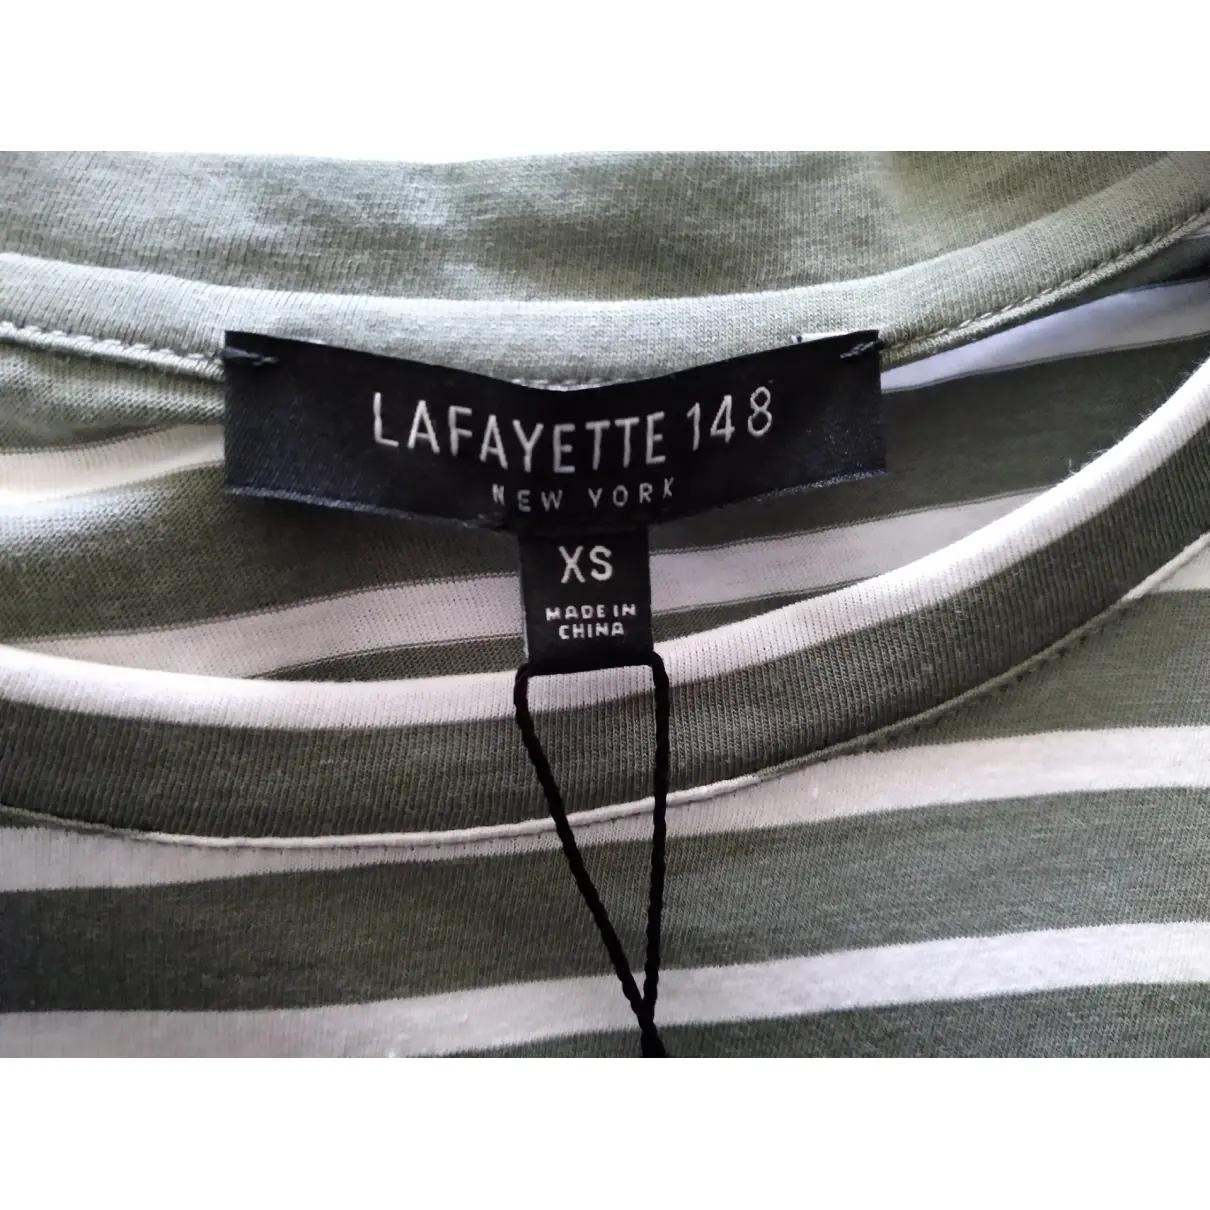 T-shirt Lafayette 148 NY